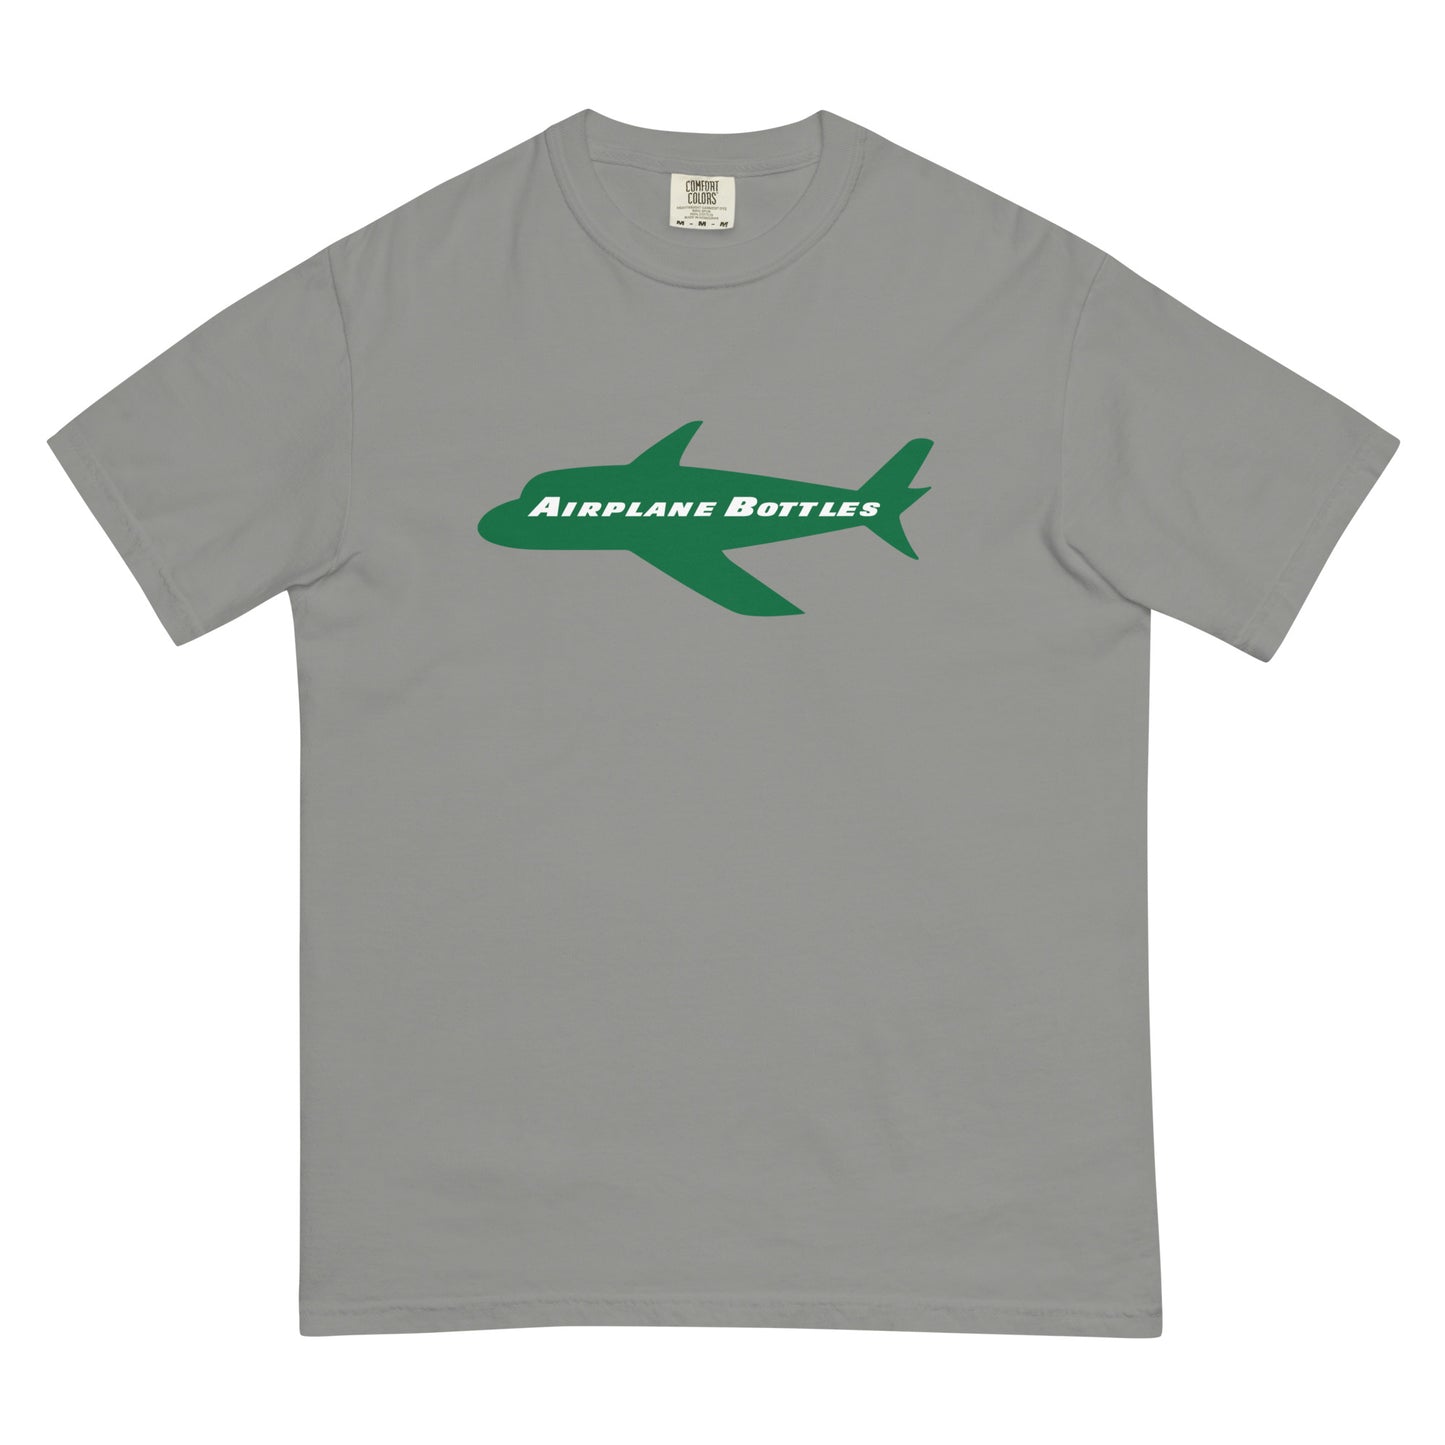 Airplane Bottles T-Shirt